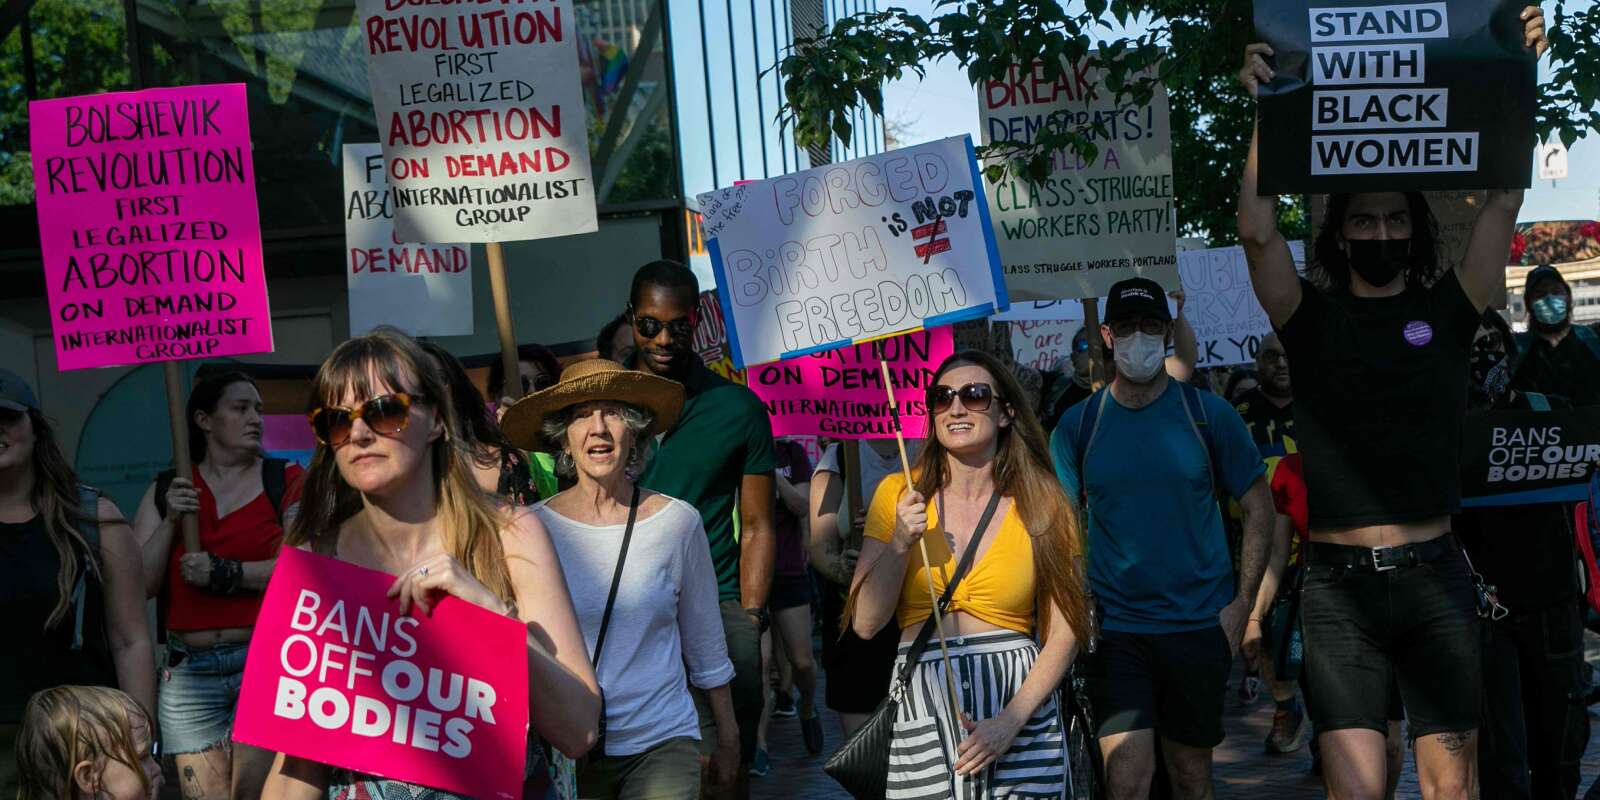 Des manifestants en faveur du droit à l’avortement défilent dans les rues de Portland (Etats-Unis), vendredi 24 juin 2022.